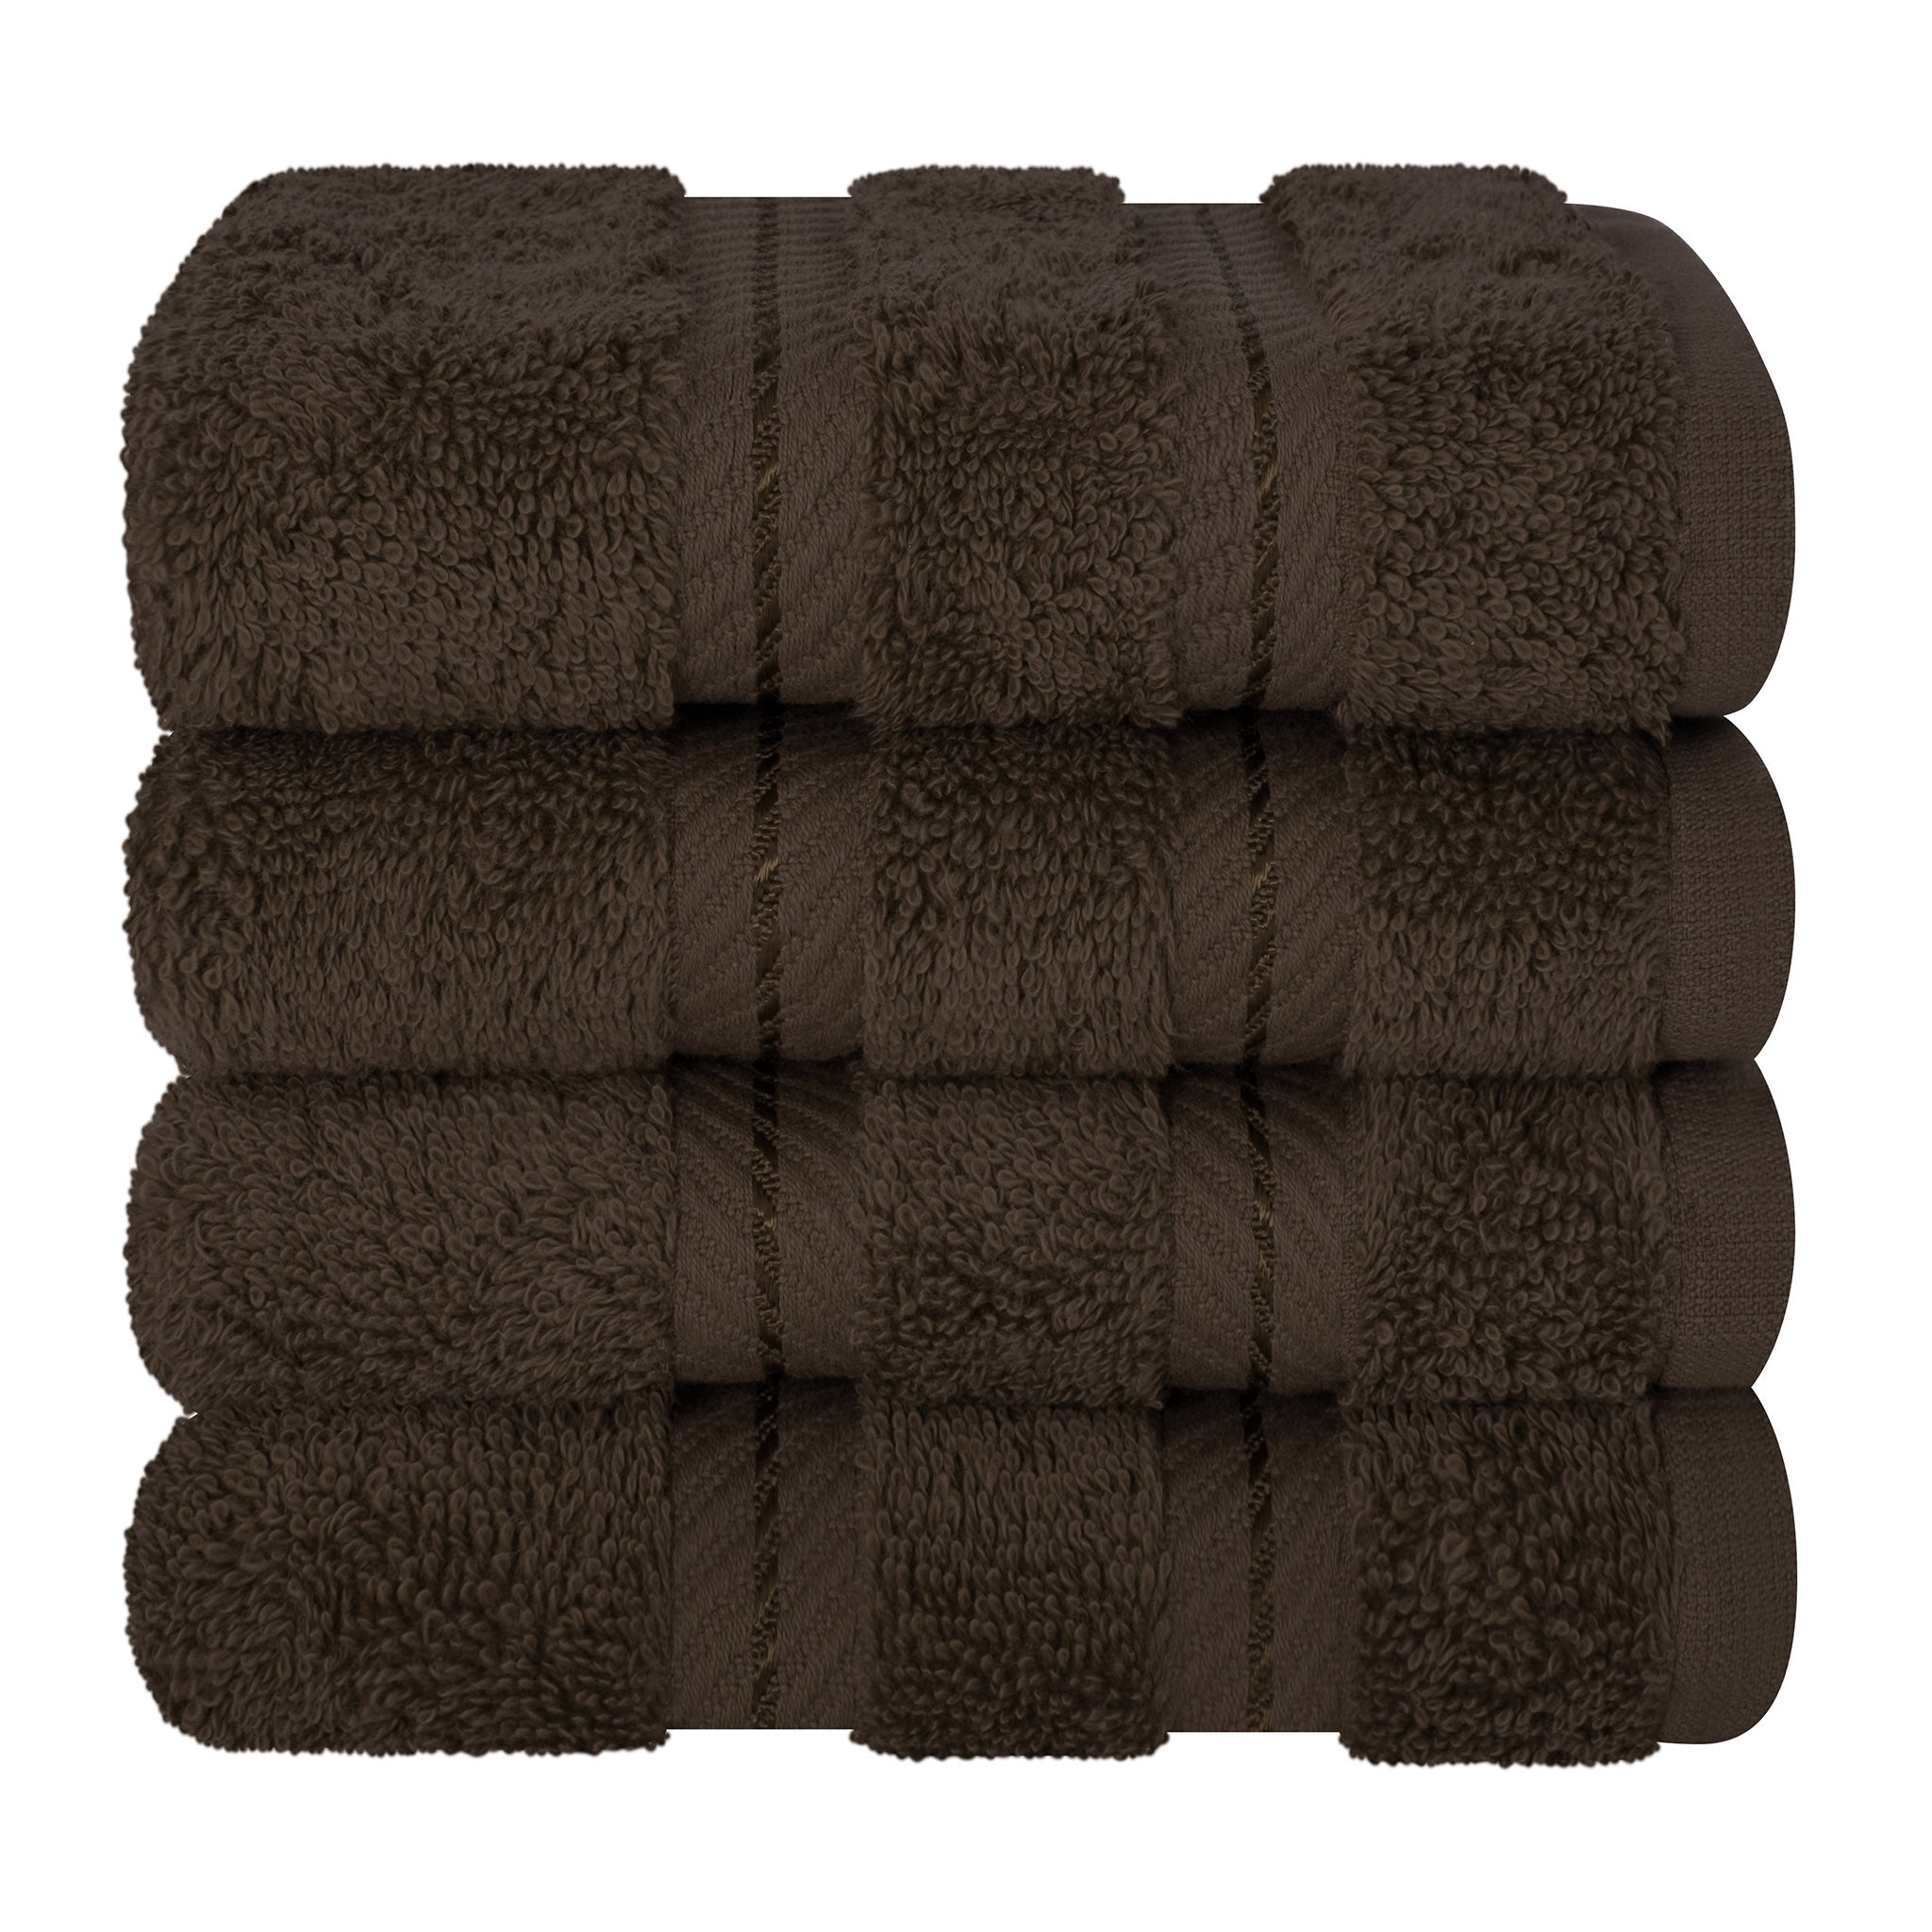 American Soft Linen 100% Turkish Cotton 4 Piece Washcloth Set chocolate-brown-7